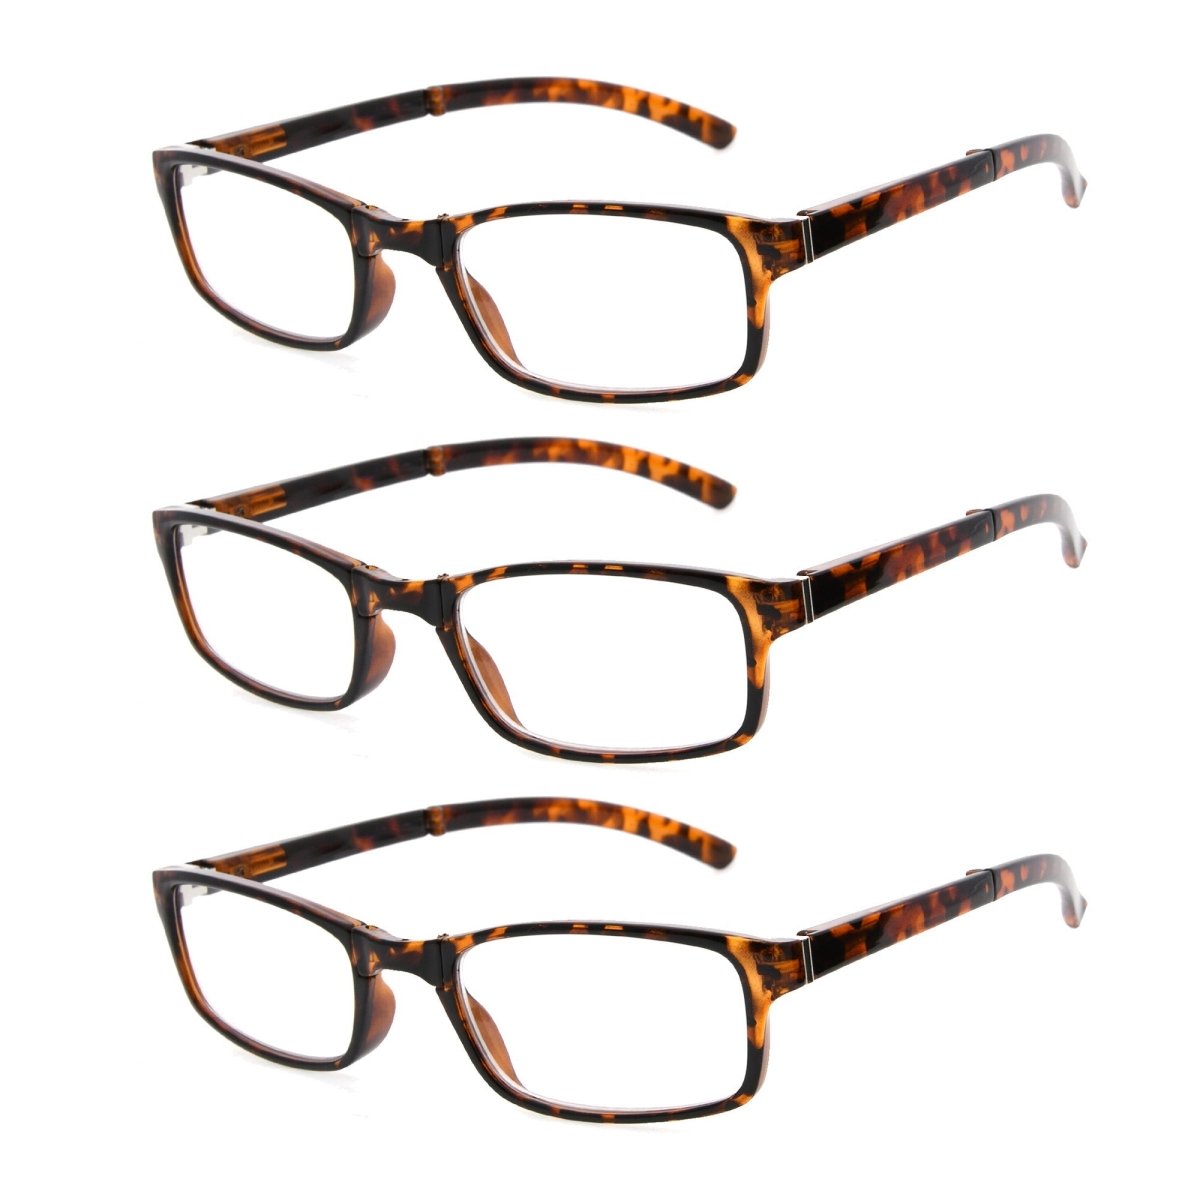 Stylish Foldable Reading Glasses Tortoise R123